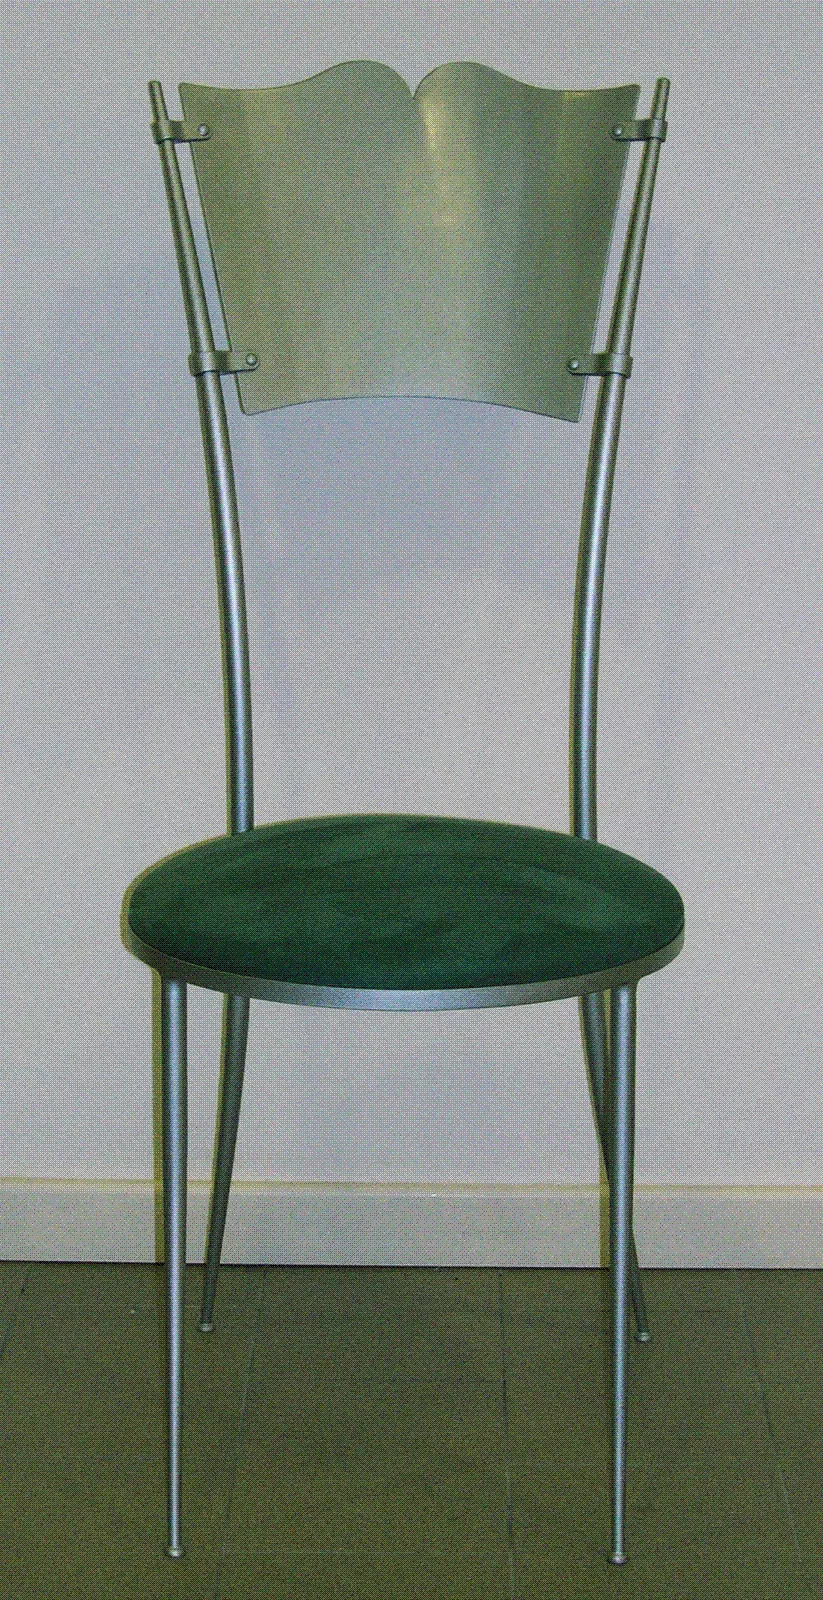 sedia ferro battuto colore verde